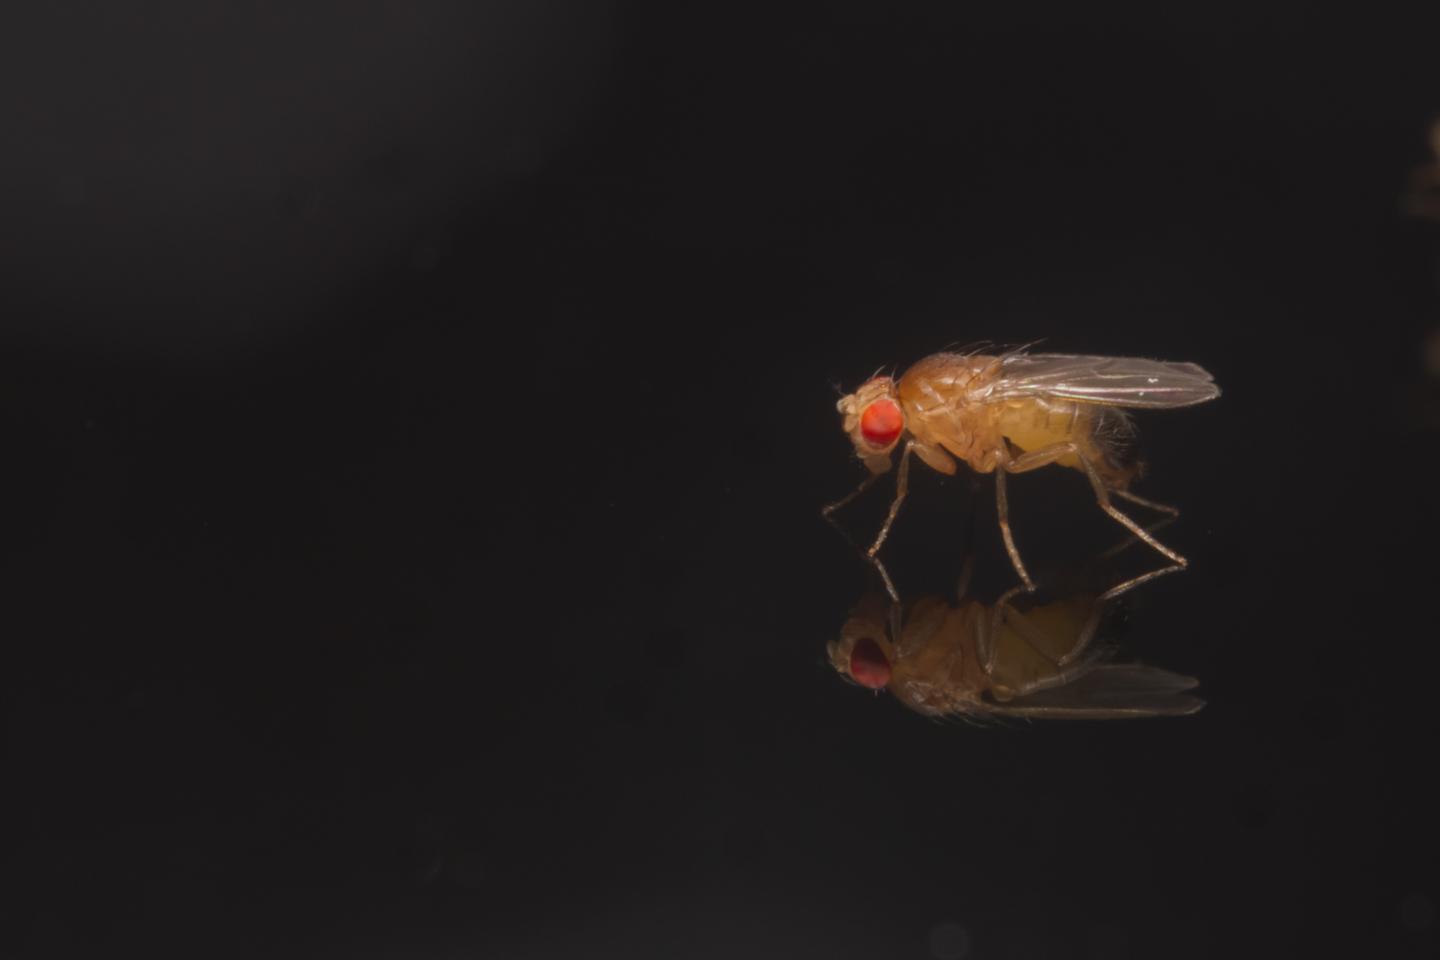 Male <i>Drosophila melanogaster</i>